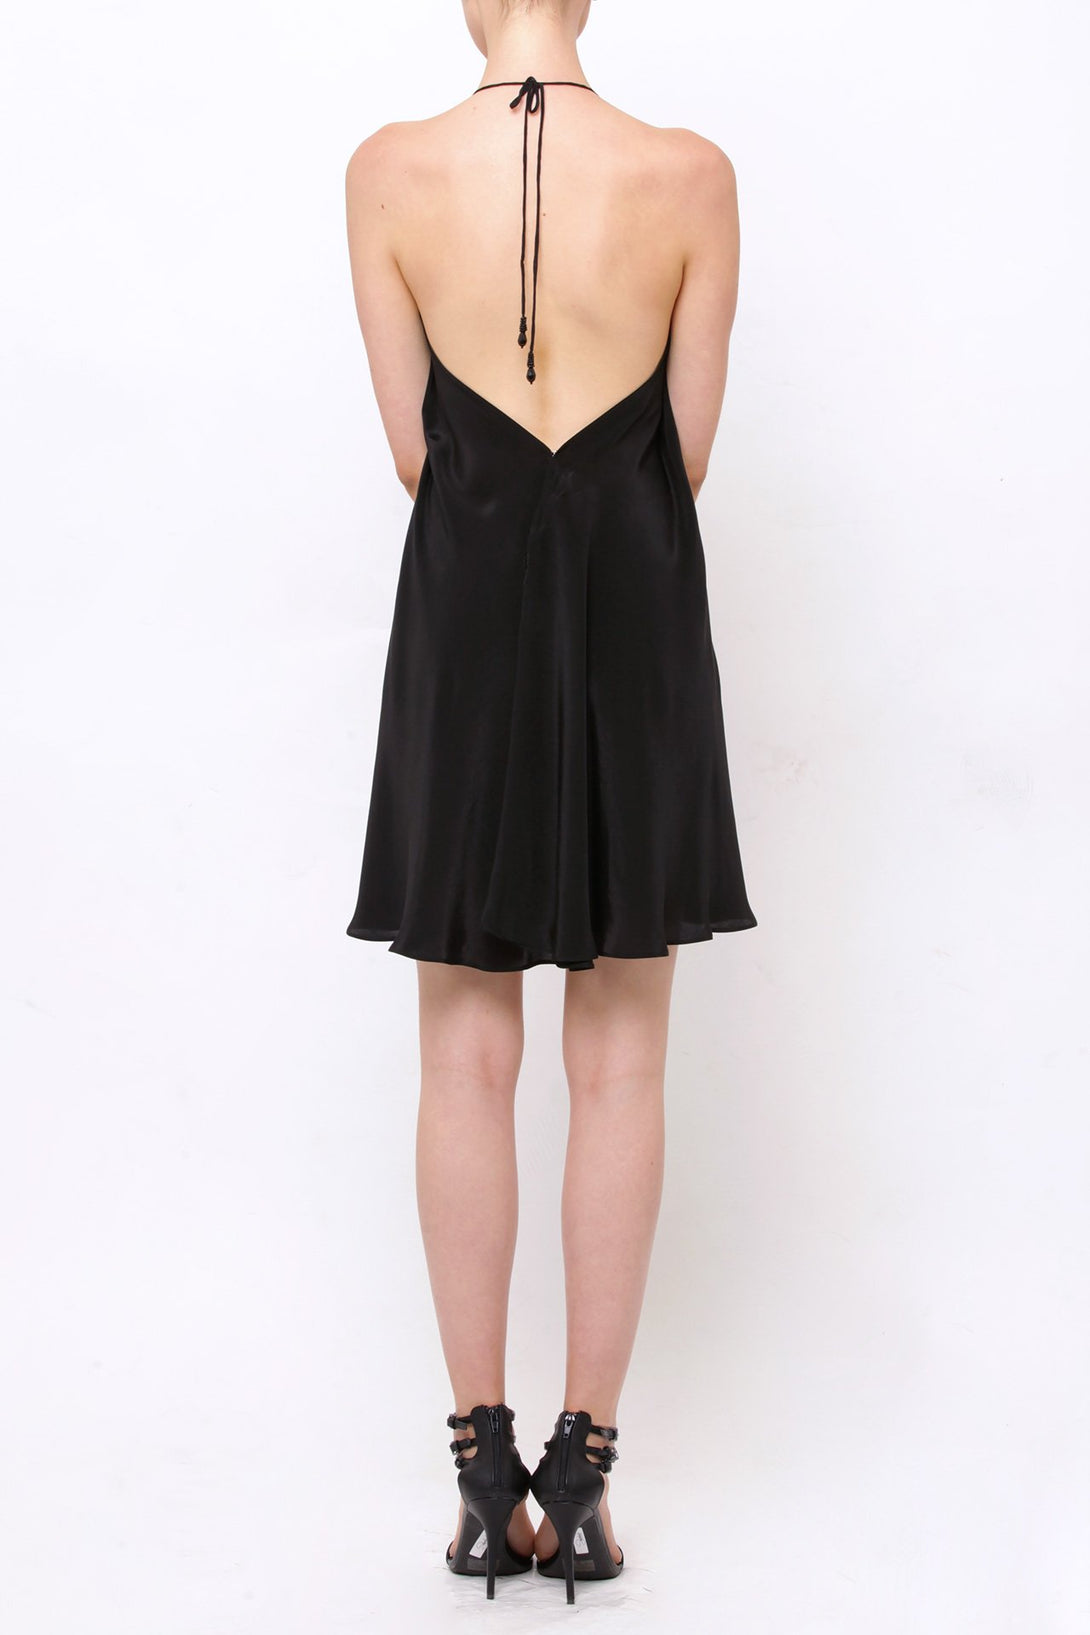  black mini cocktail dress, Shahida Parides, cute mini dresses, short sleeveless summer dresses,